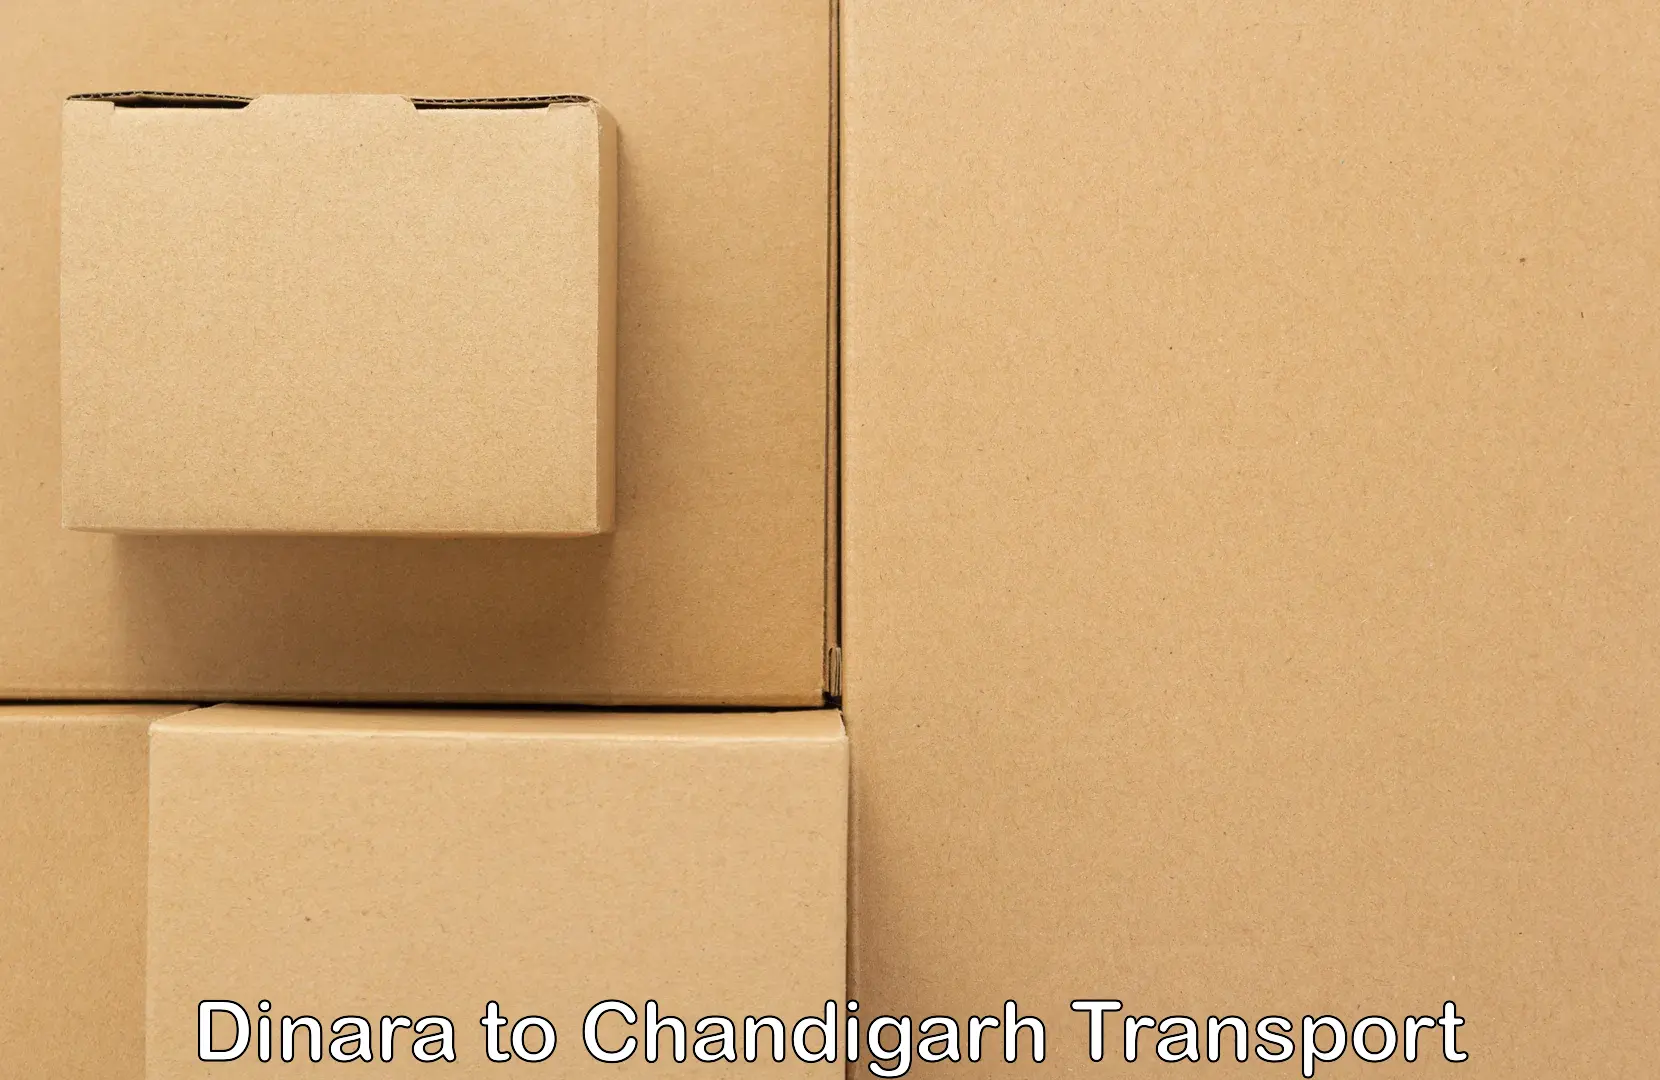 Online transport service Dinara to Chandigarh